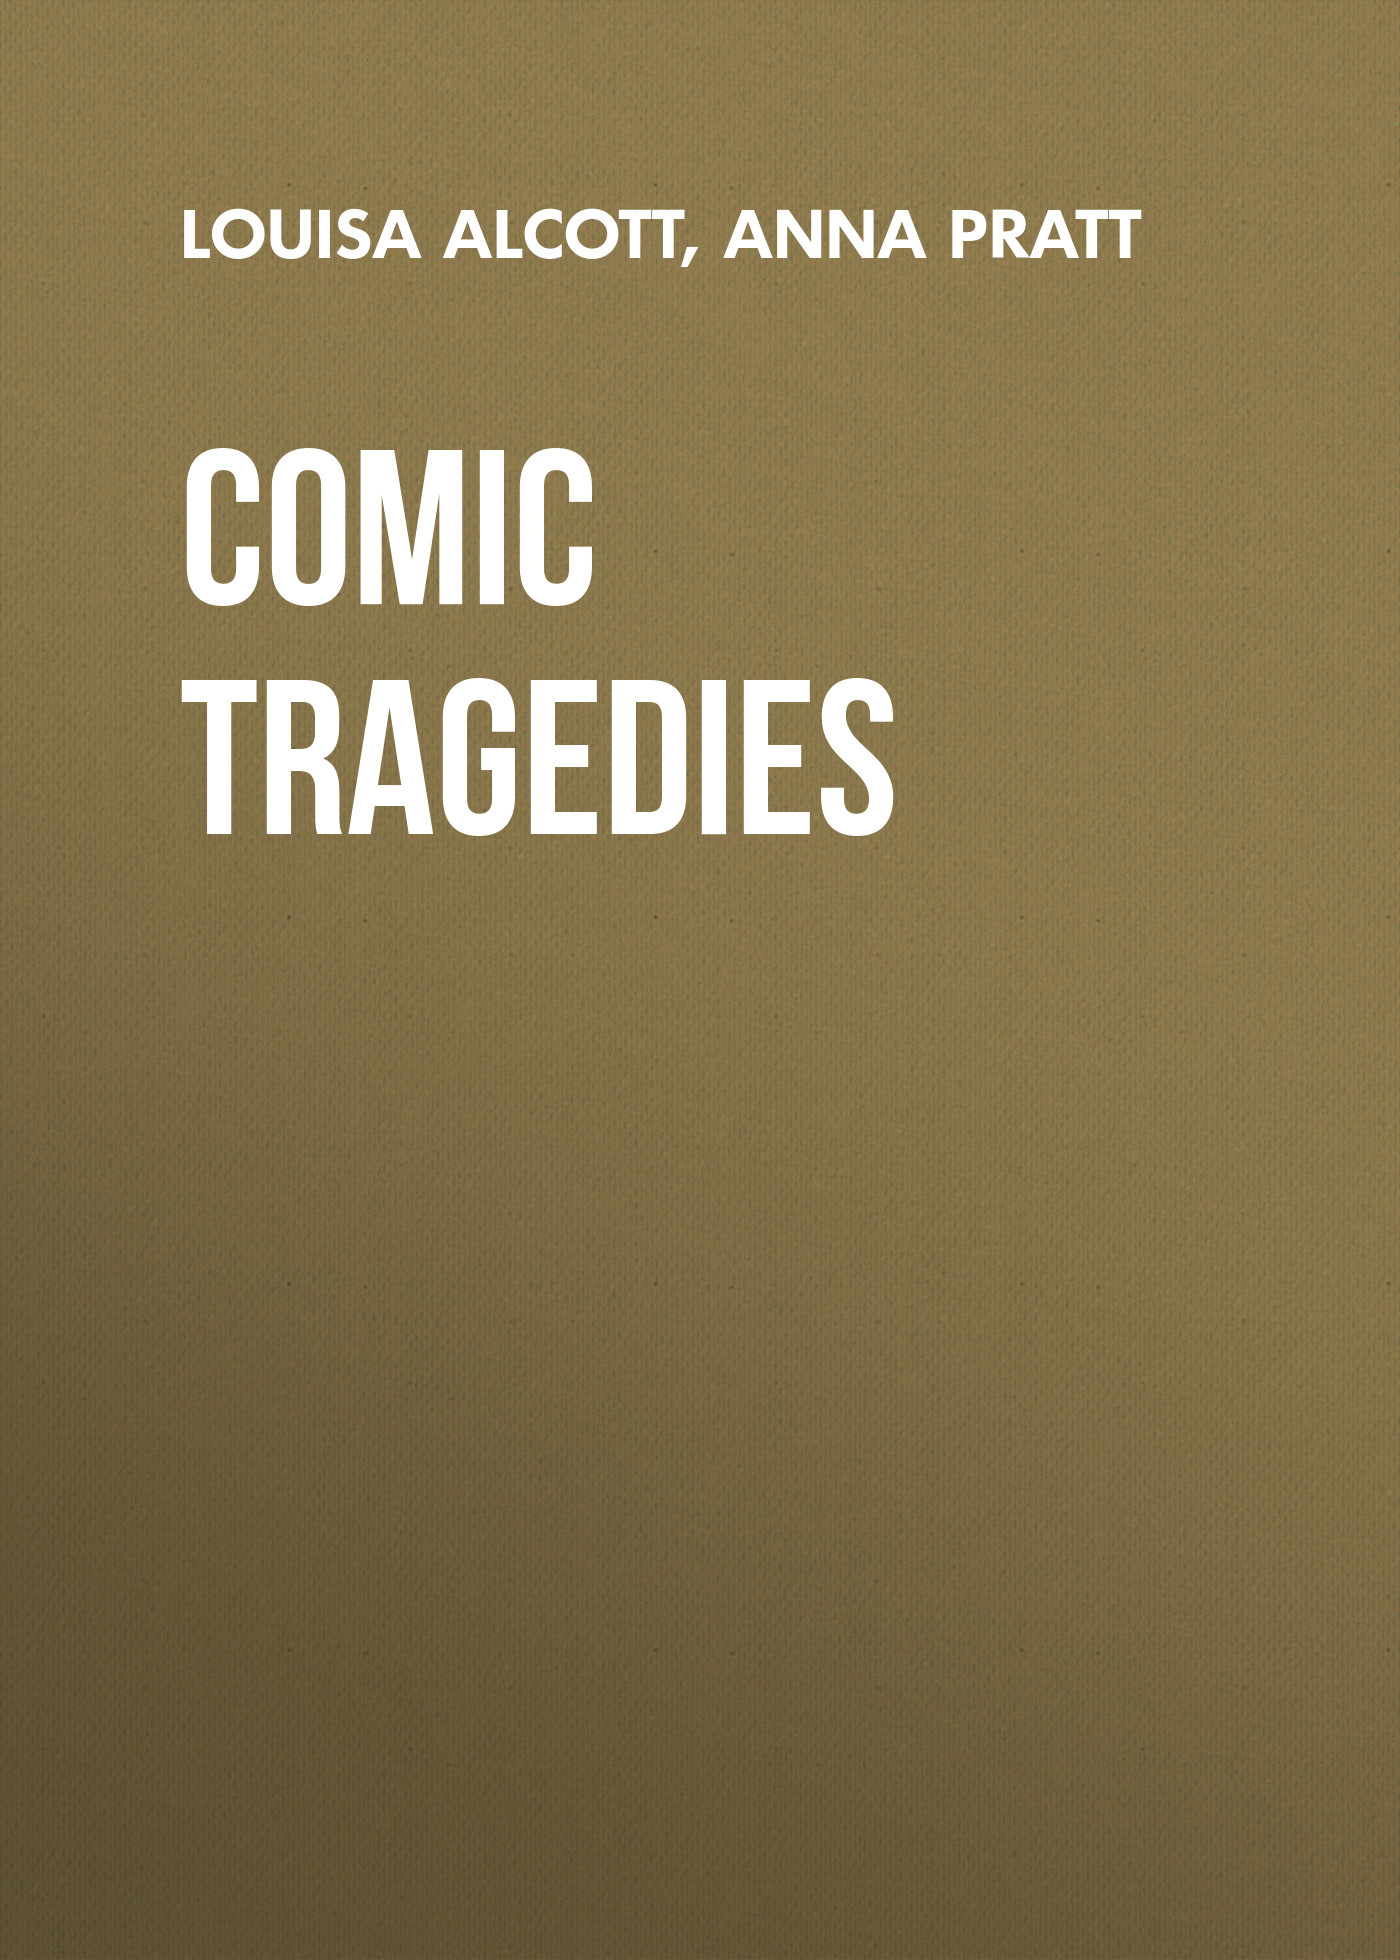 Книга Comic Tragedies из серии , созданная Louisa Alcott, Anna Pratt, может относится к жанру Иностранные языки, Зарубежная классика, Зарубежная драматургия. Стоимость электронной книги Comic Tragedies с идентификатором 23159539 составляет 5.99 руб.